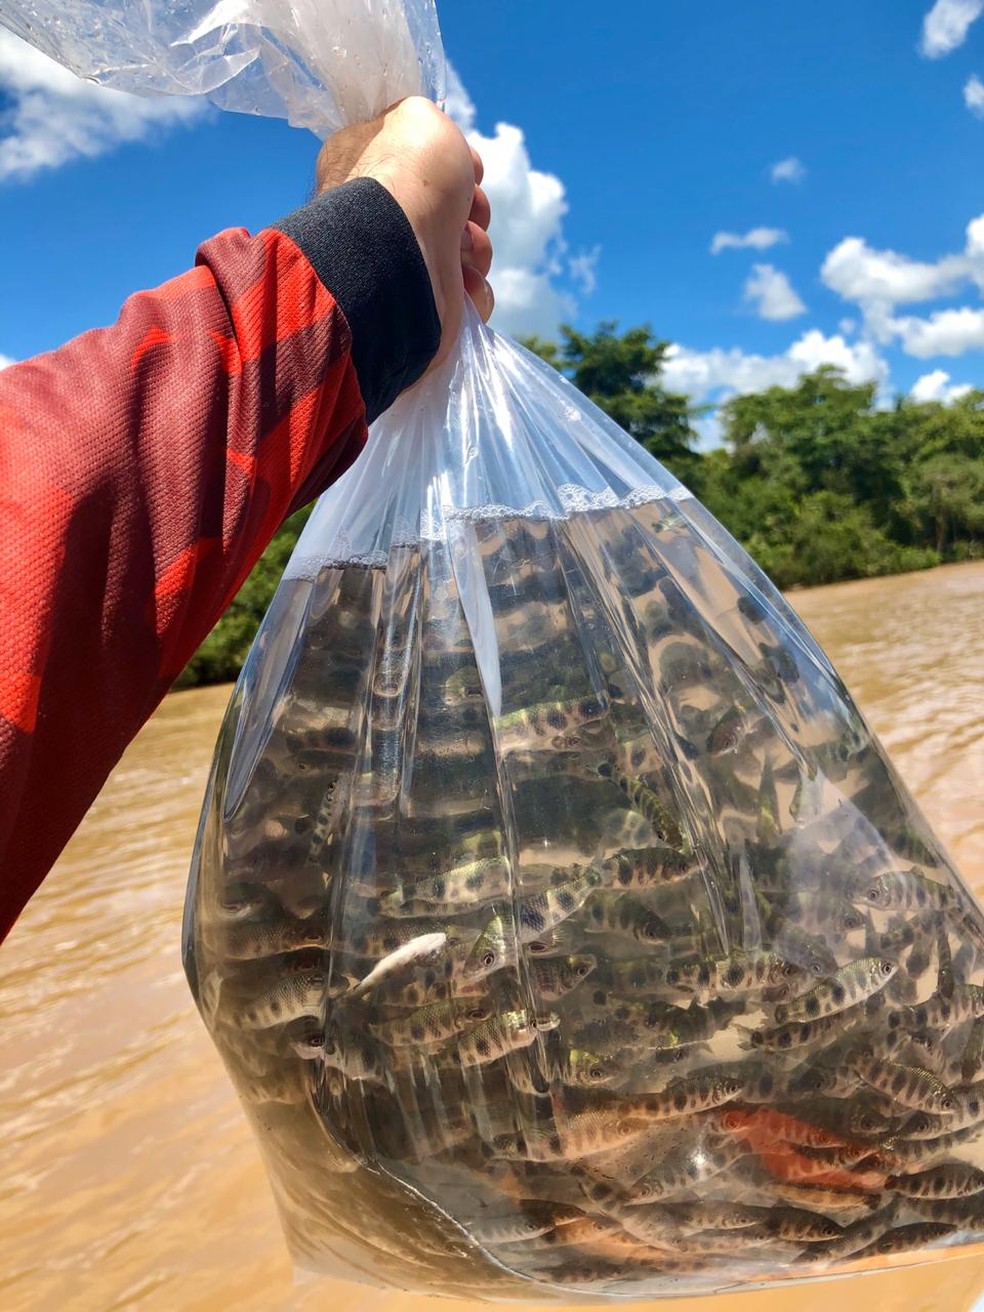 Repovoamento de peixes foi feito no Rio Aguapeí, em Rinópolis — Foto: Igor Augusto Gibara de Oliveira